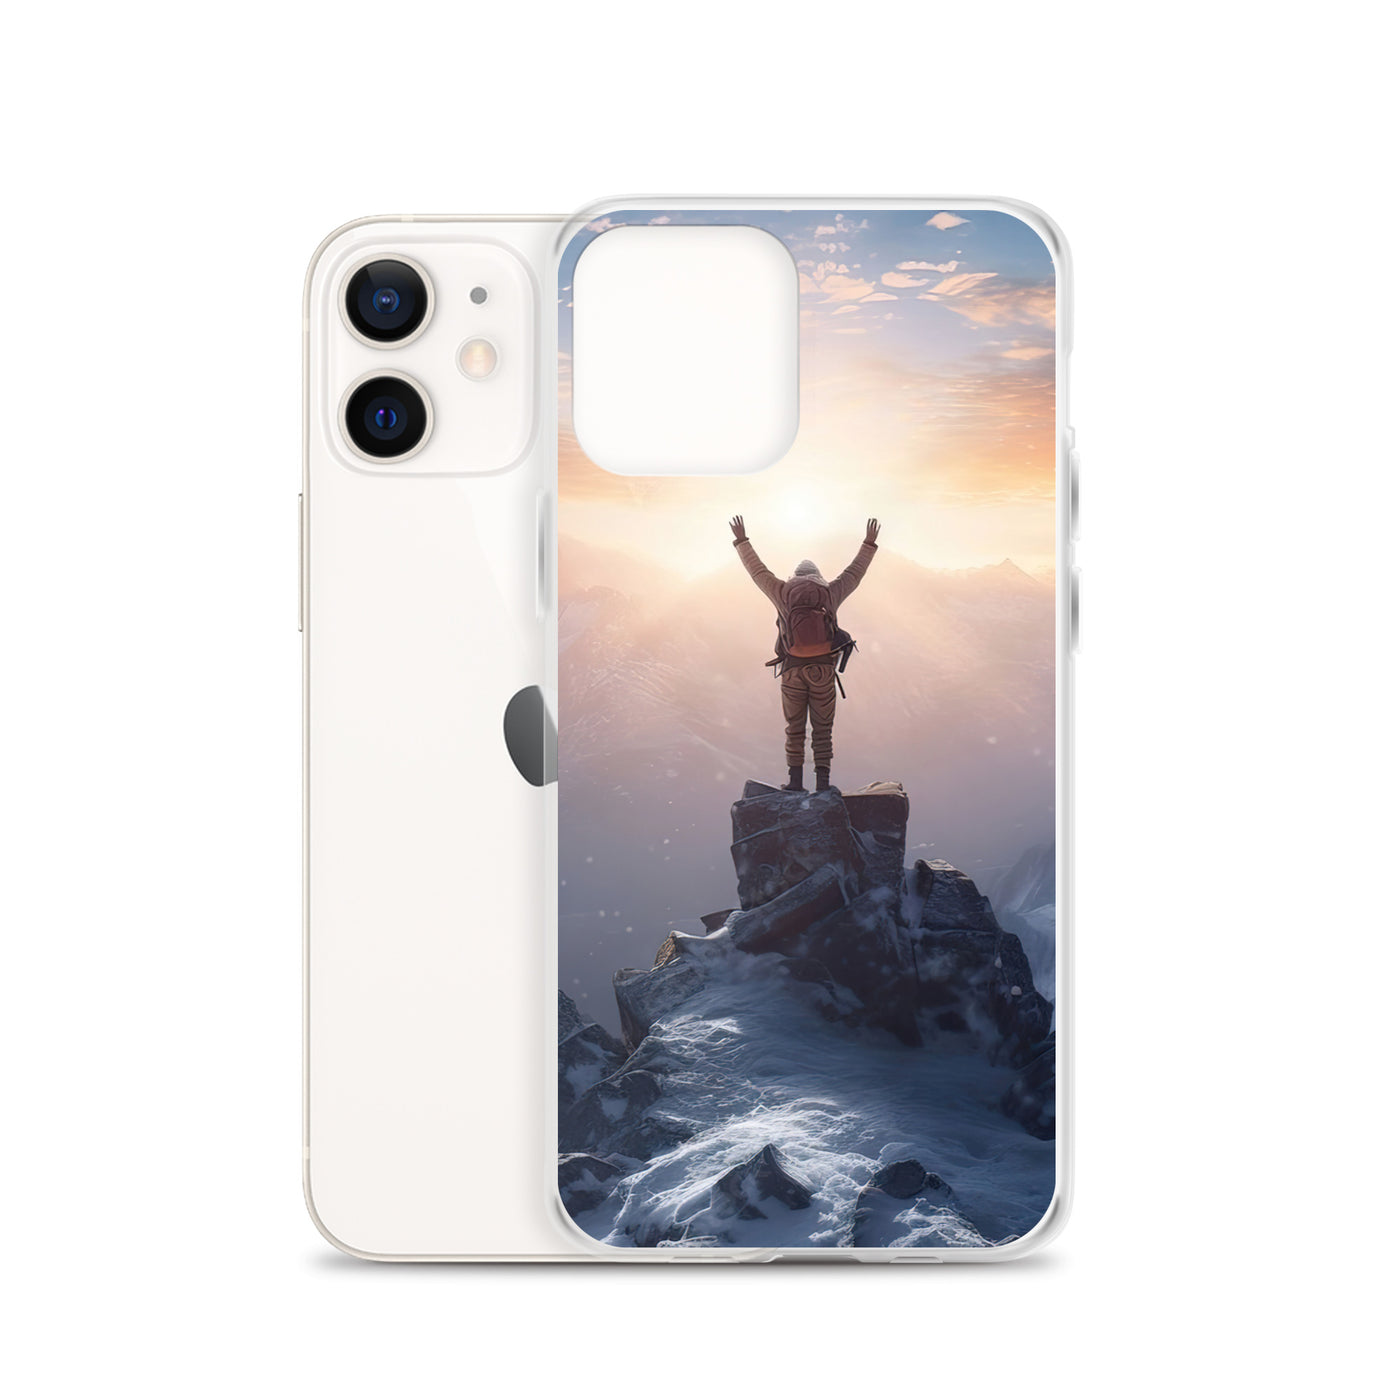 Mann auf der Spitze eines Berges - Landschaftsmalerei - iPhone Schutzhülle (durchsichtig) berge xxx